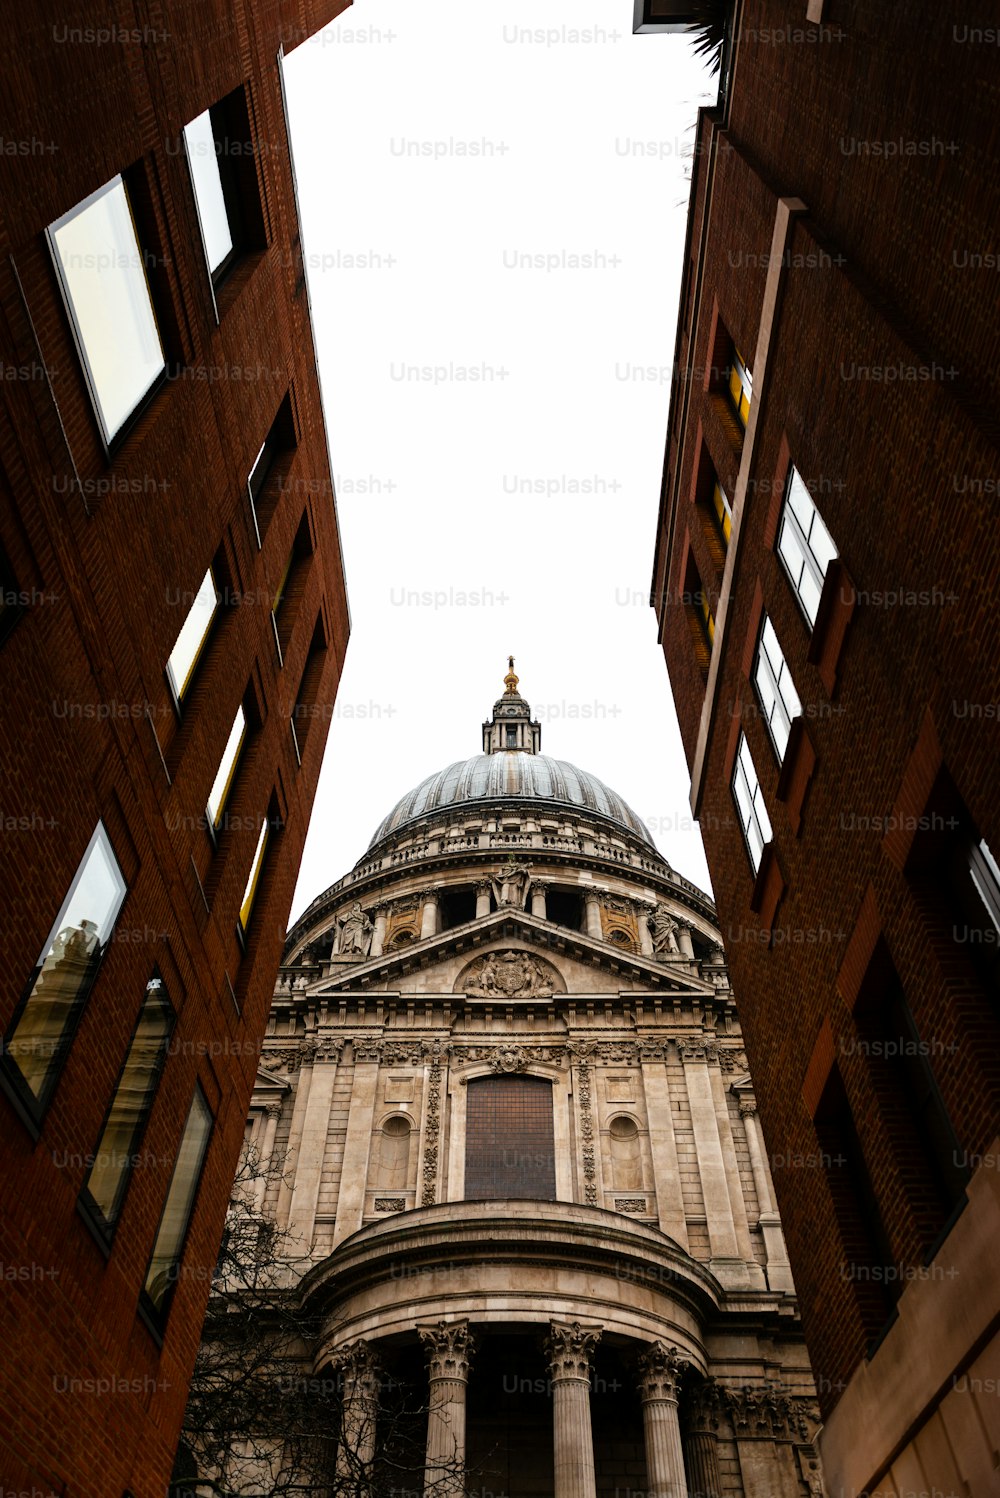 Vue latérale de la cathédrale Saint-Paul de Londres vue à travers une rue étroite. Construit après le grand incendie de Londres de 1666, c’est le chef-d’œuvre de Christopher Wren et l’une des attractions les plus touristiques de la ville.